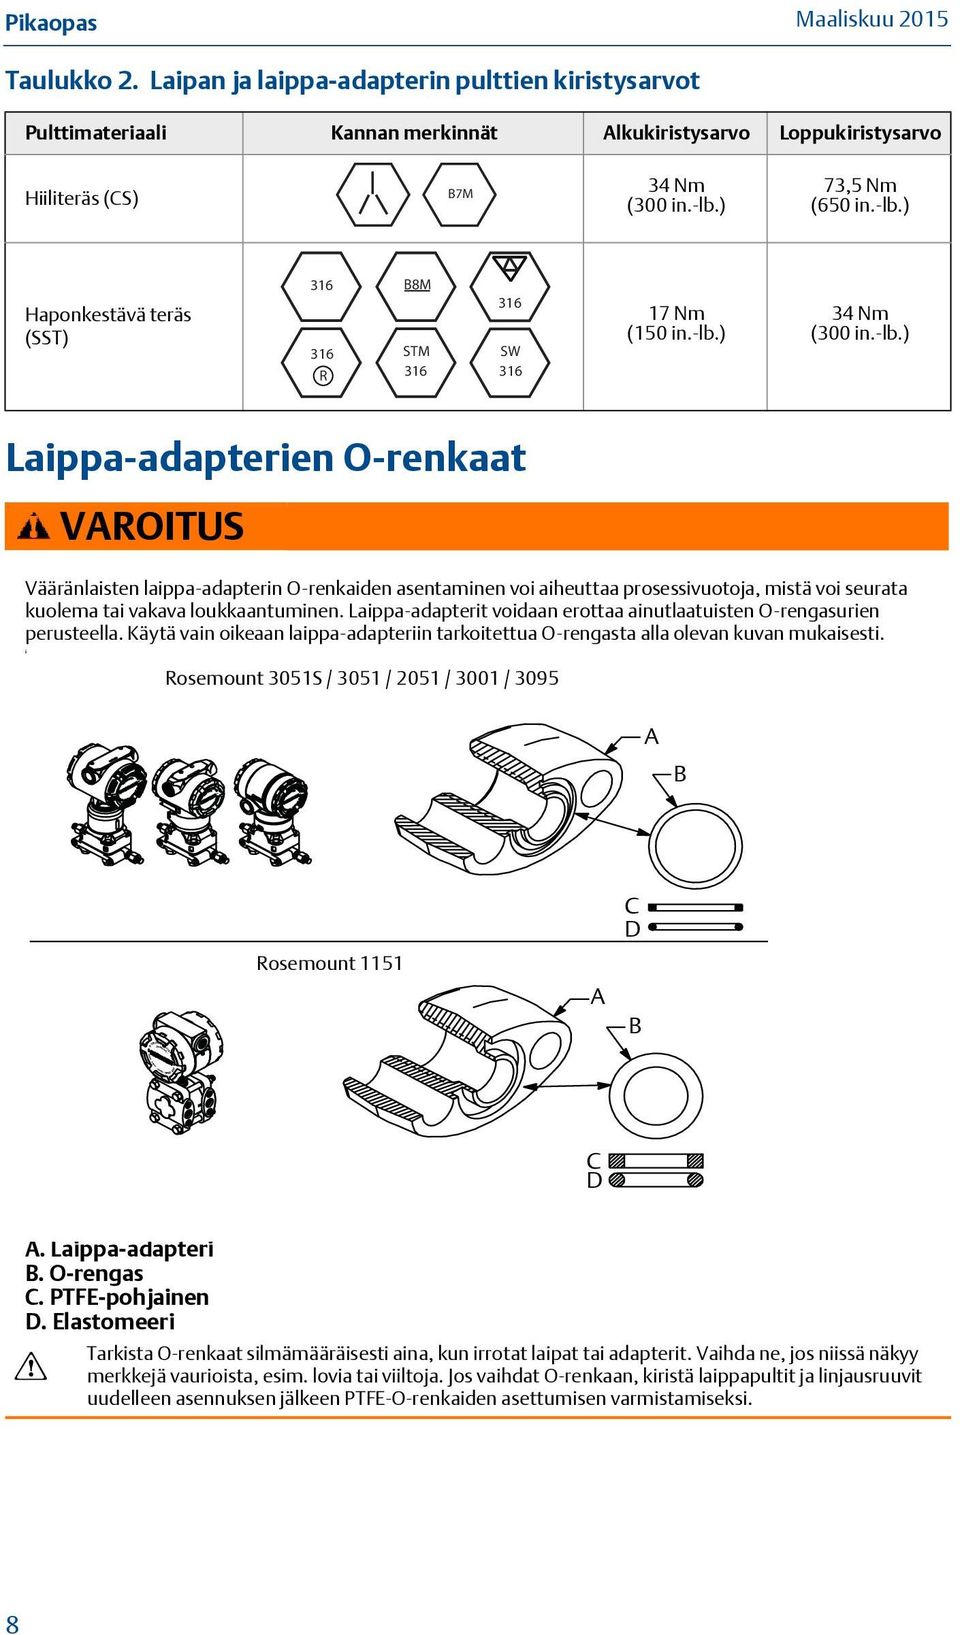 Laippa-adapterit voidaan erottaa ainutlaatuisten O-rengasurien perusteella. Käytä vain oikeaan laippa-adapteriin tarkoitettua O-rengasta alla olevan kuvan mukaisesti.